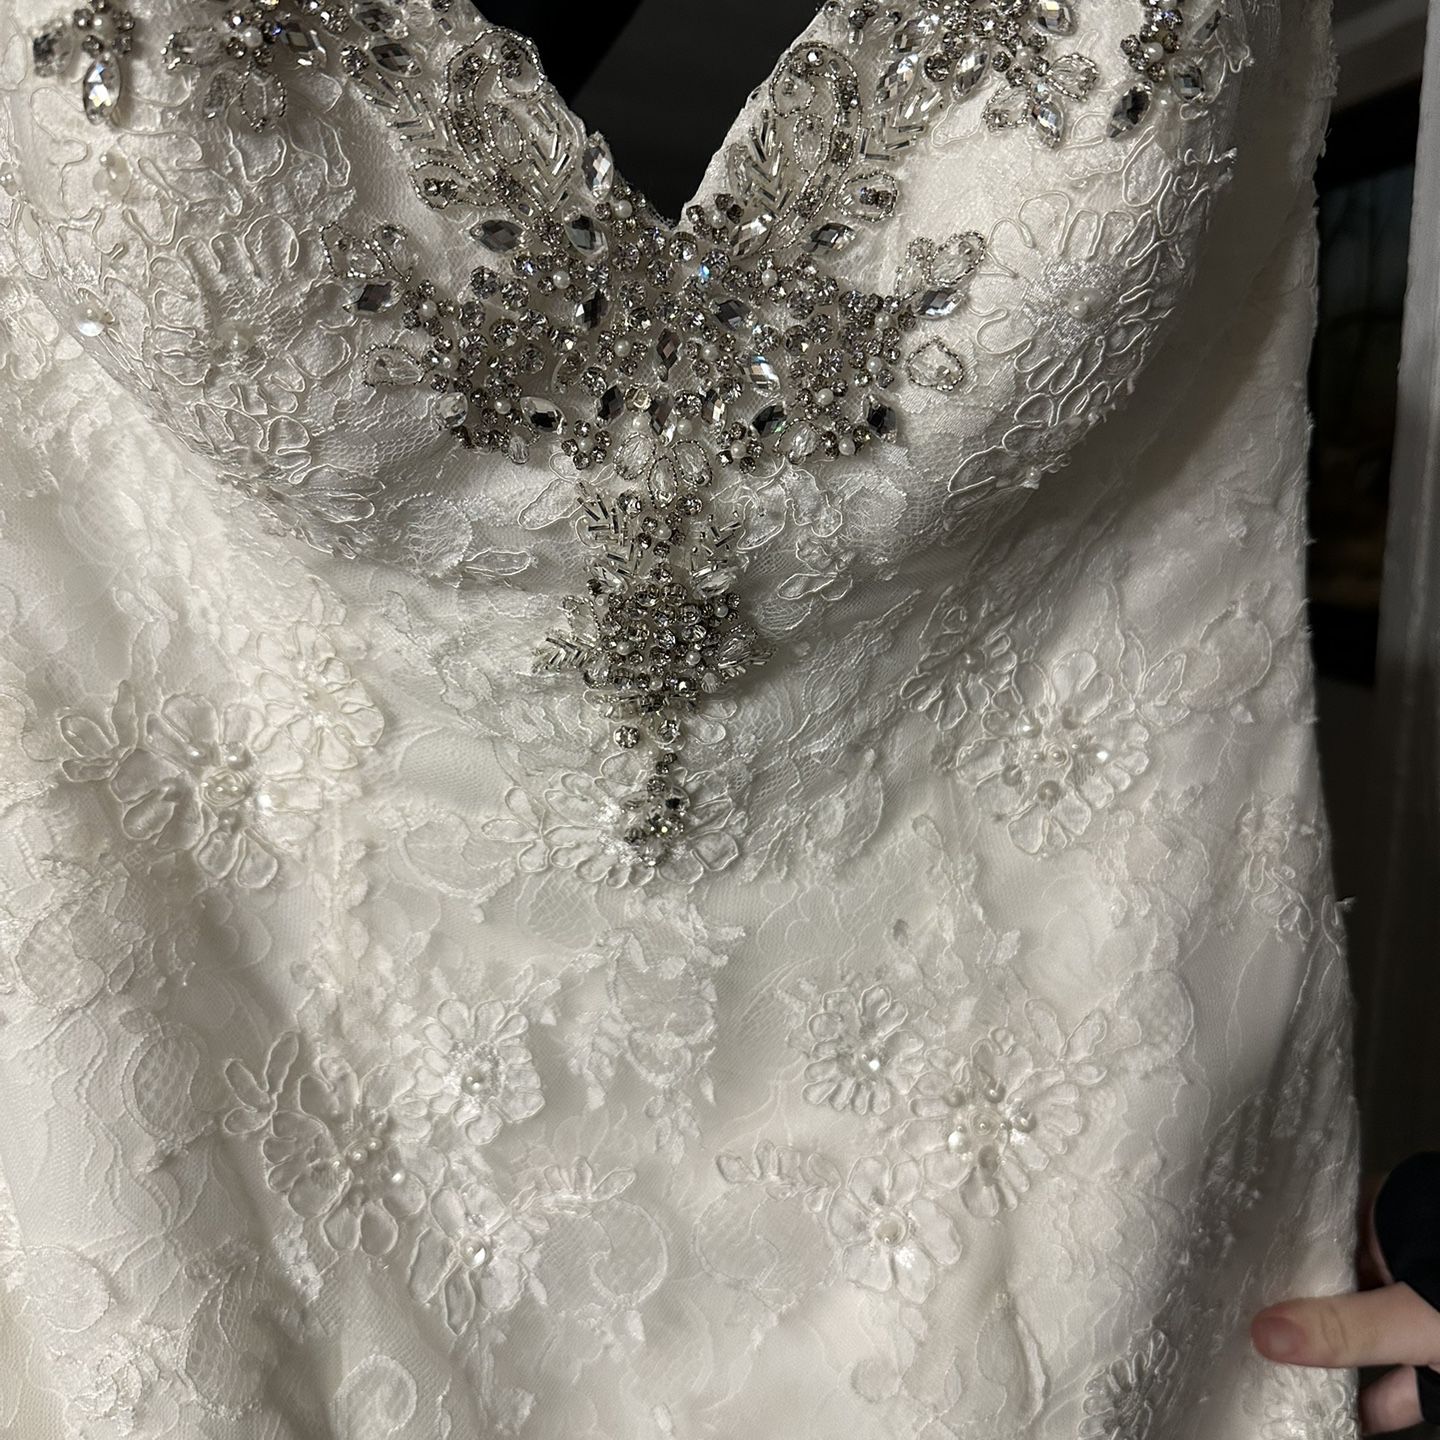 Size 12 Wedding Dress